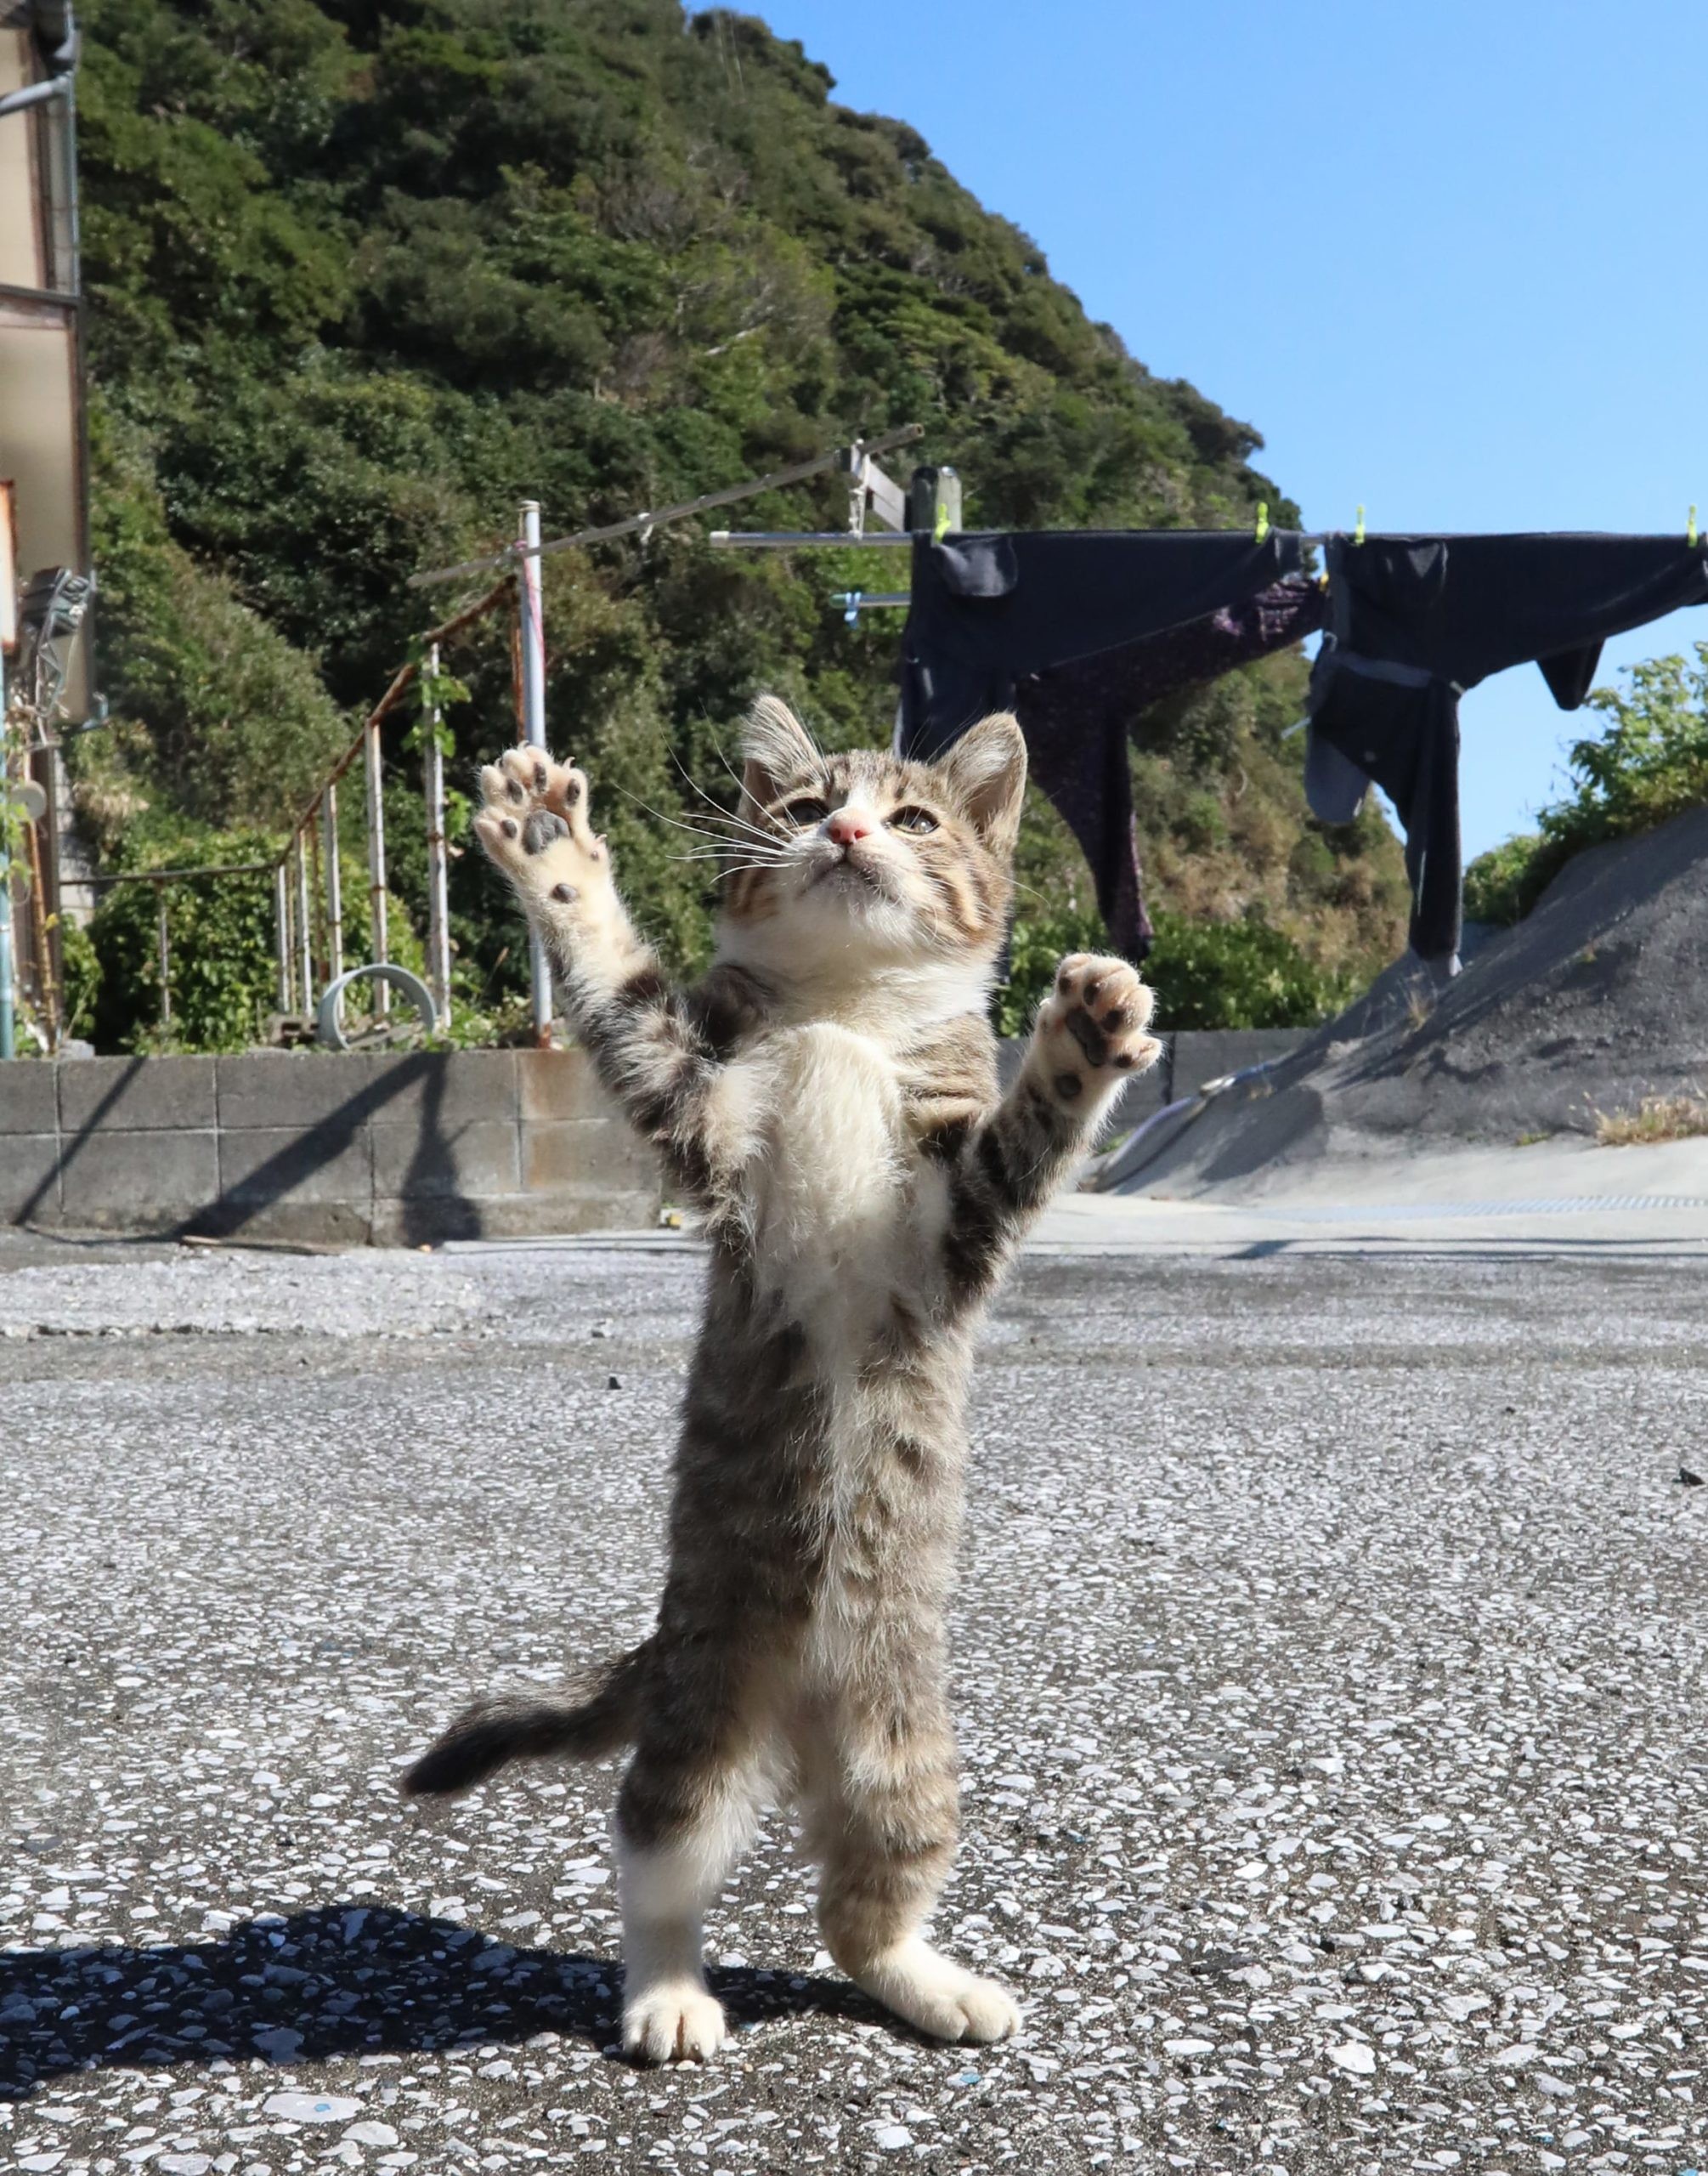 立ち猫 たちねこ 猫 島猫 しまねこ 島猫 tachineko tachineko.net 海 島 綺麗 漁港 空 白い海